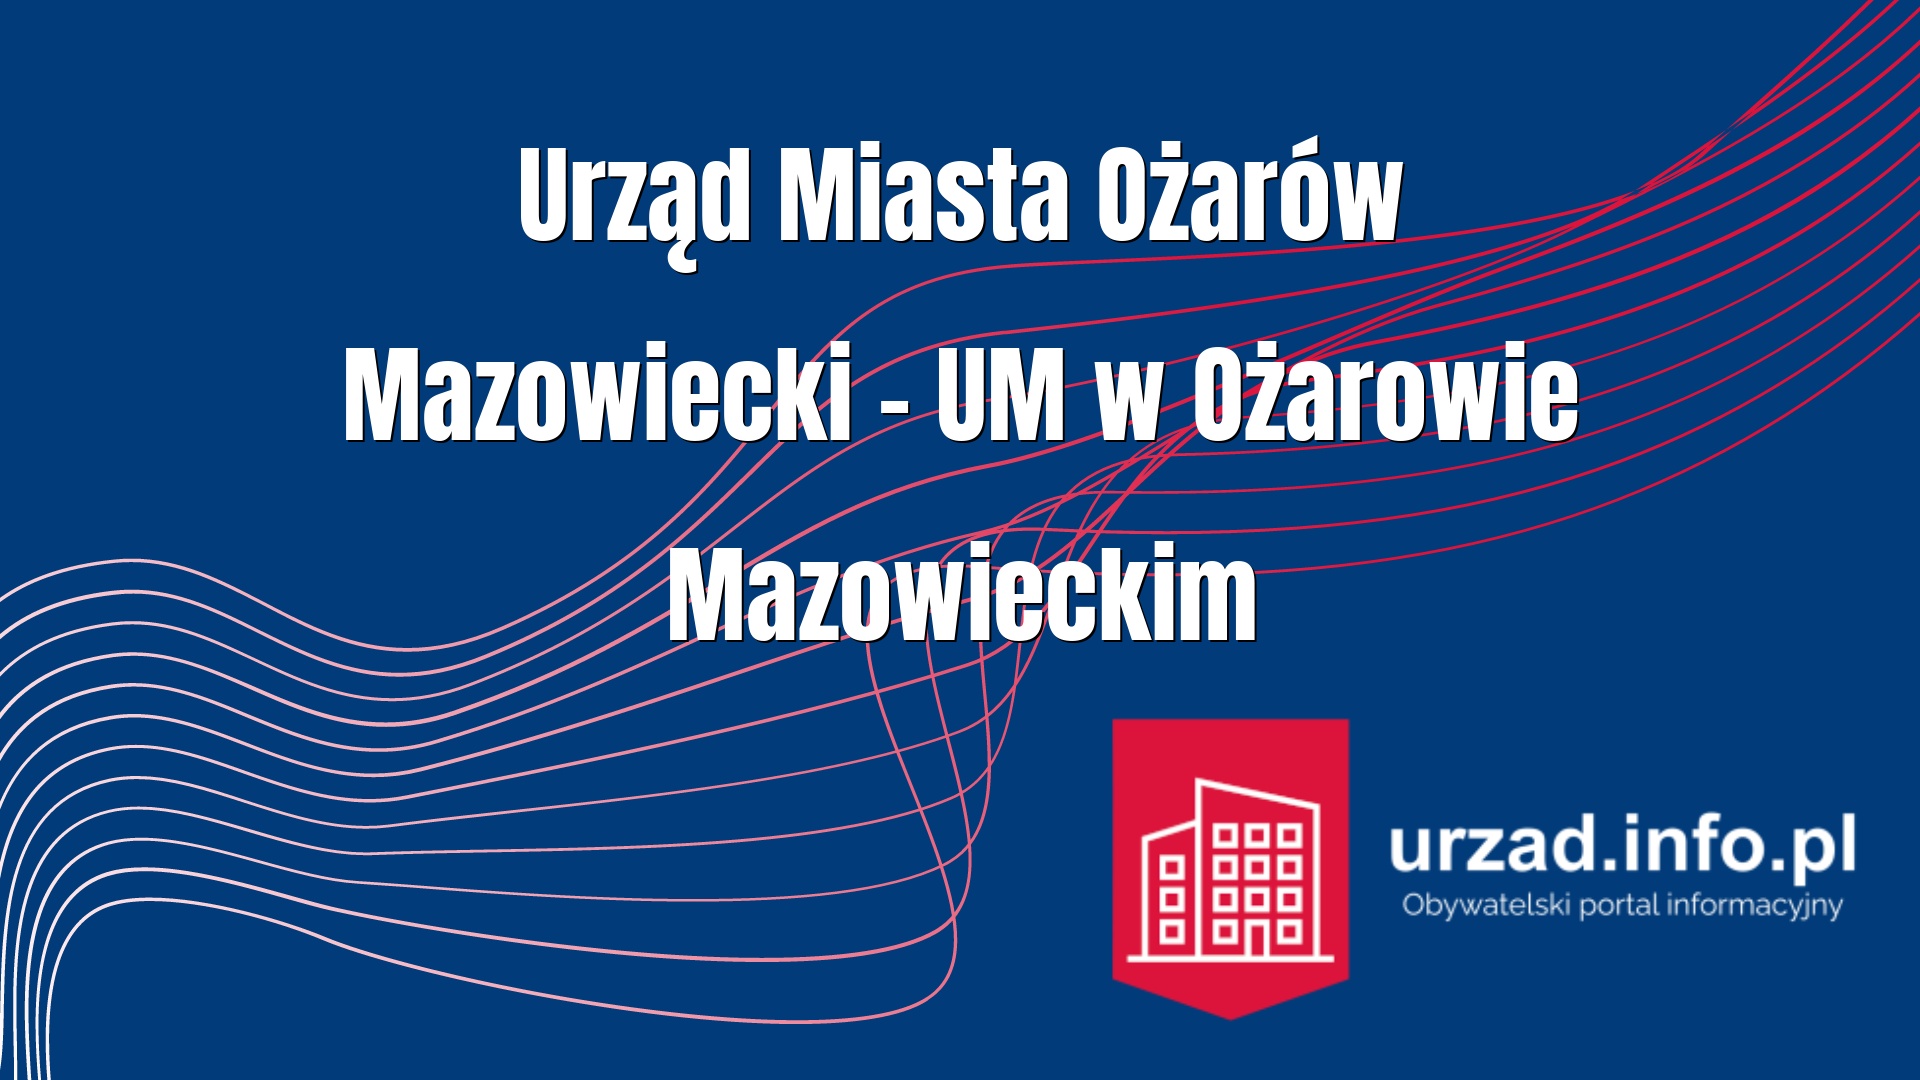 Urząd Miasta Ożarów Mazowiecki – UM w Ożarowie Mazowieckim